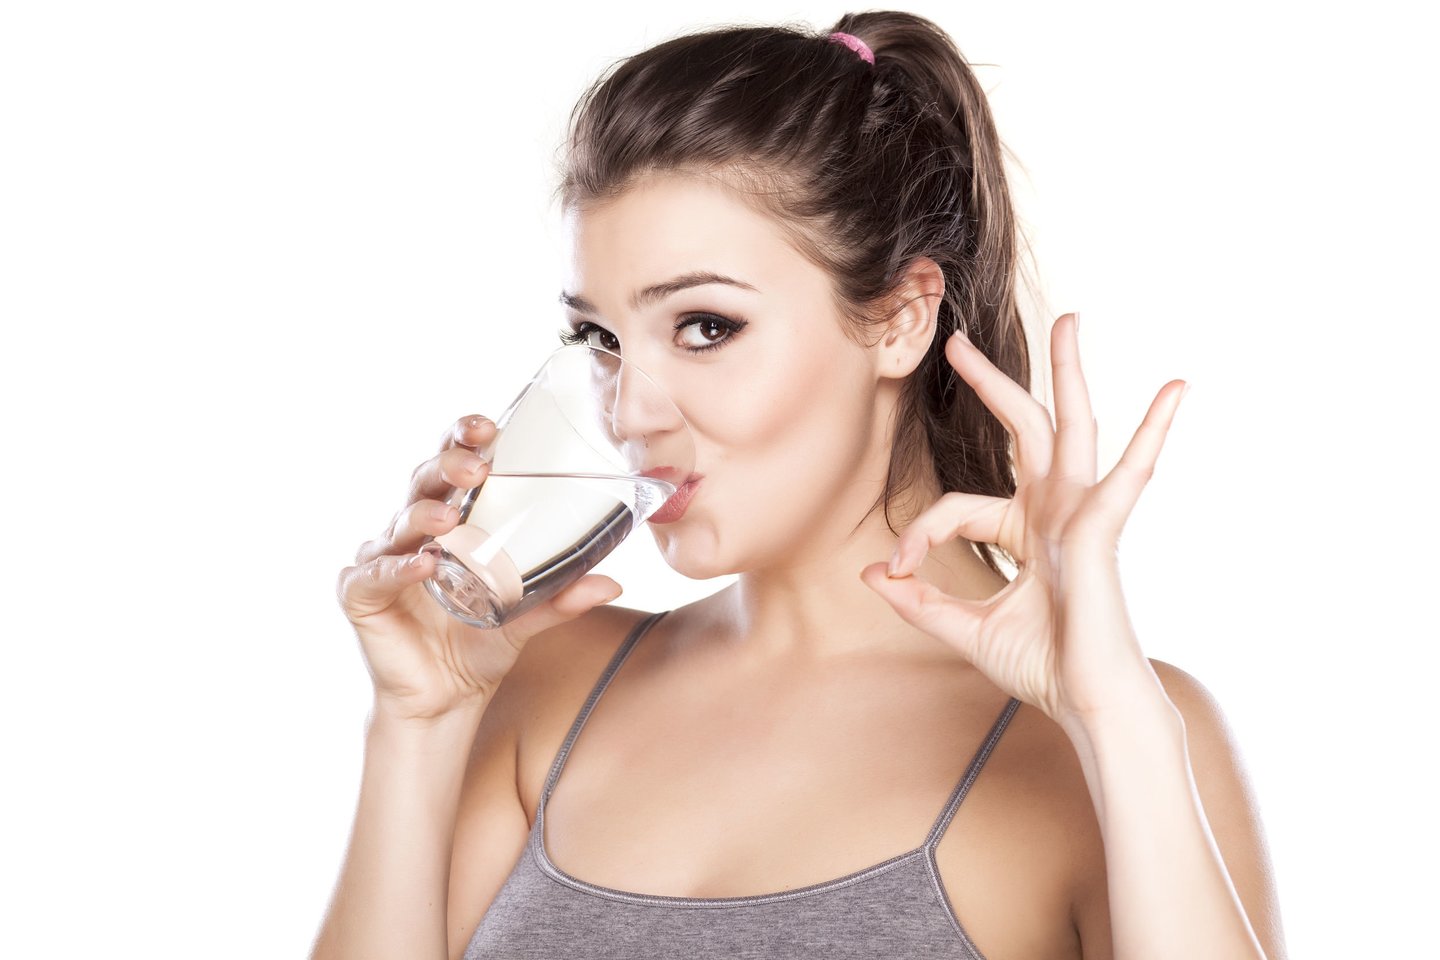 Per dieną vertėtų išgerti apie 2 litrus vandens, tai yra maždaug 30 mililitrų vandens 1 kilogramui kūno masės. <br>123rf nuotr.